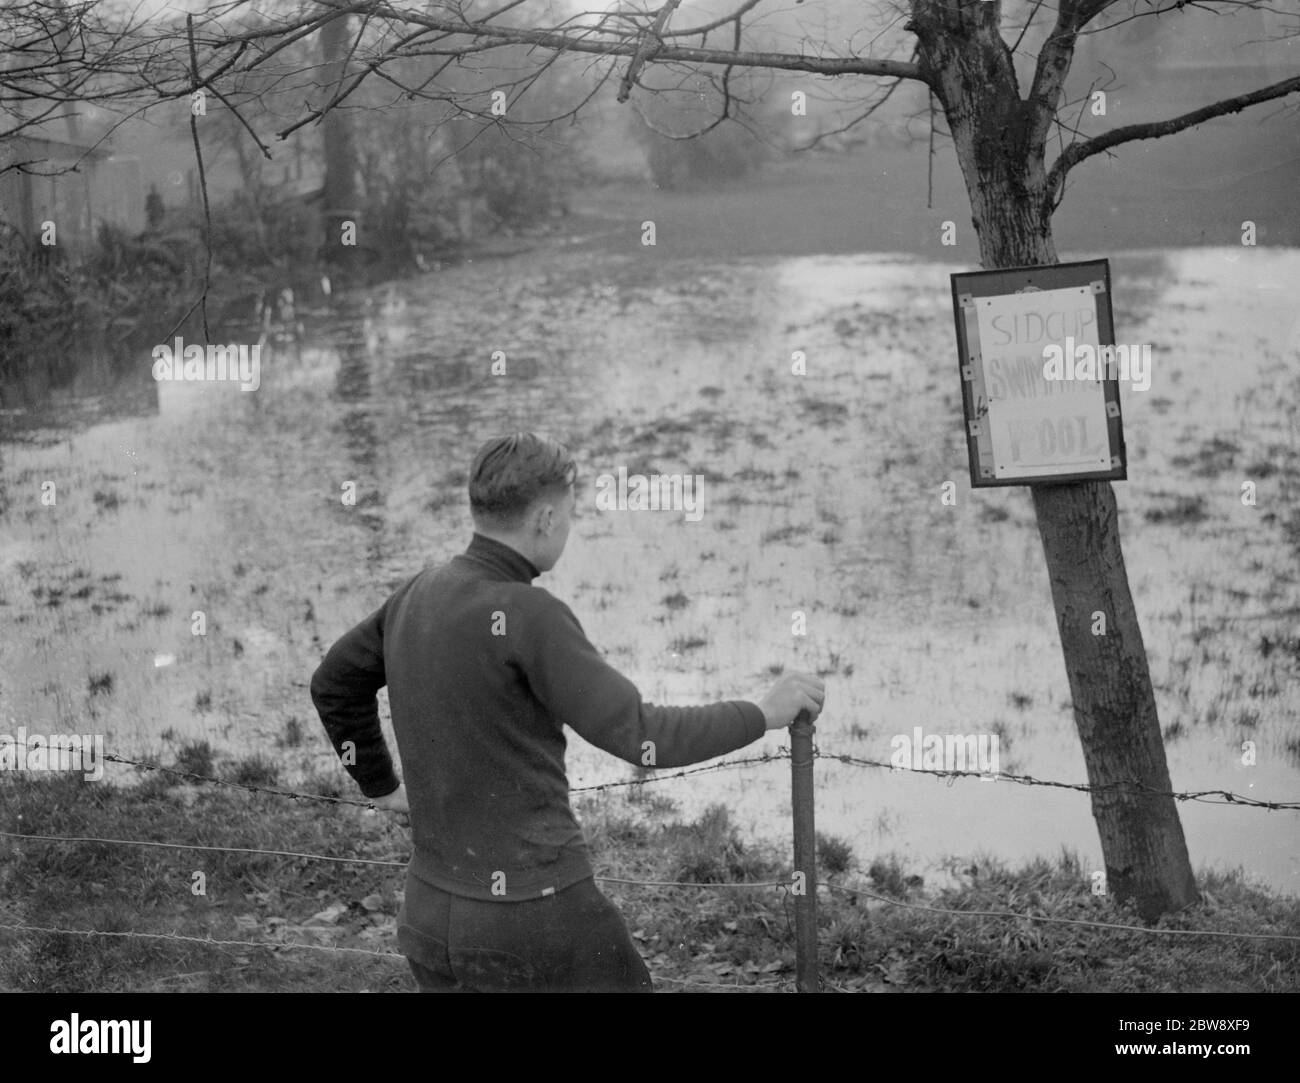 Un garçon regarde la piscine Sidcup inondée - inondée en raison du mauvais temps. 1936 Banque D'Images